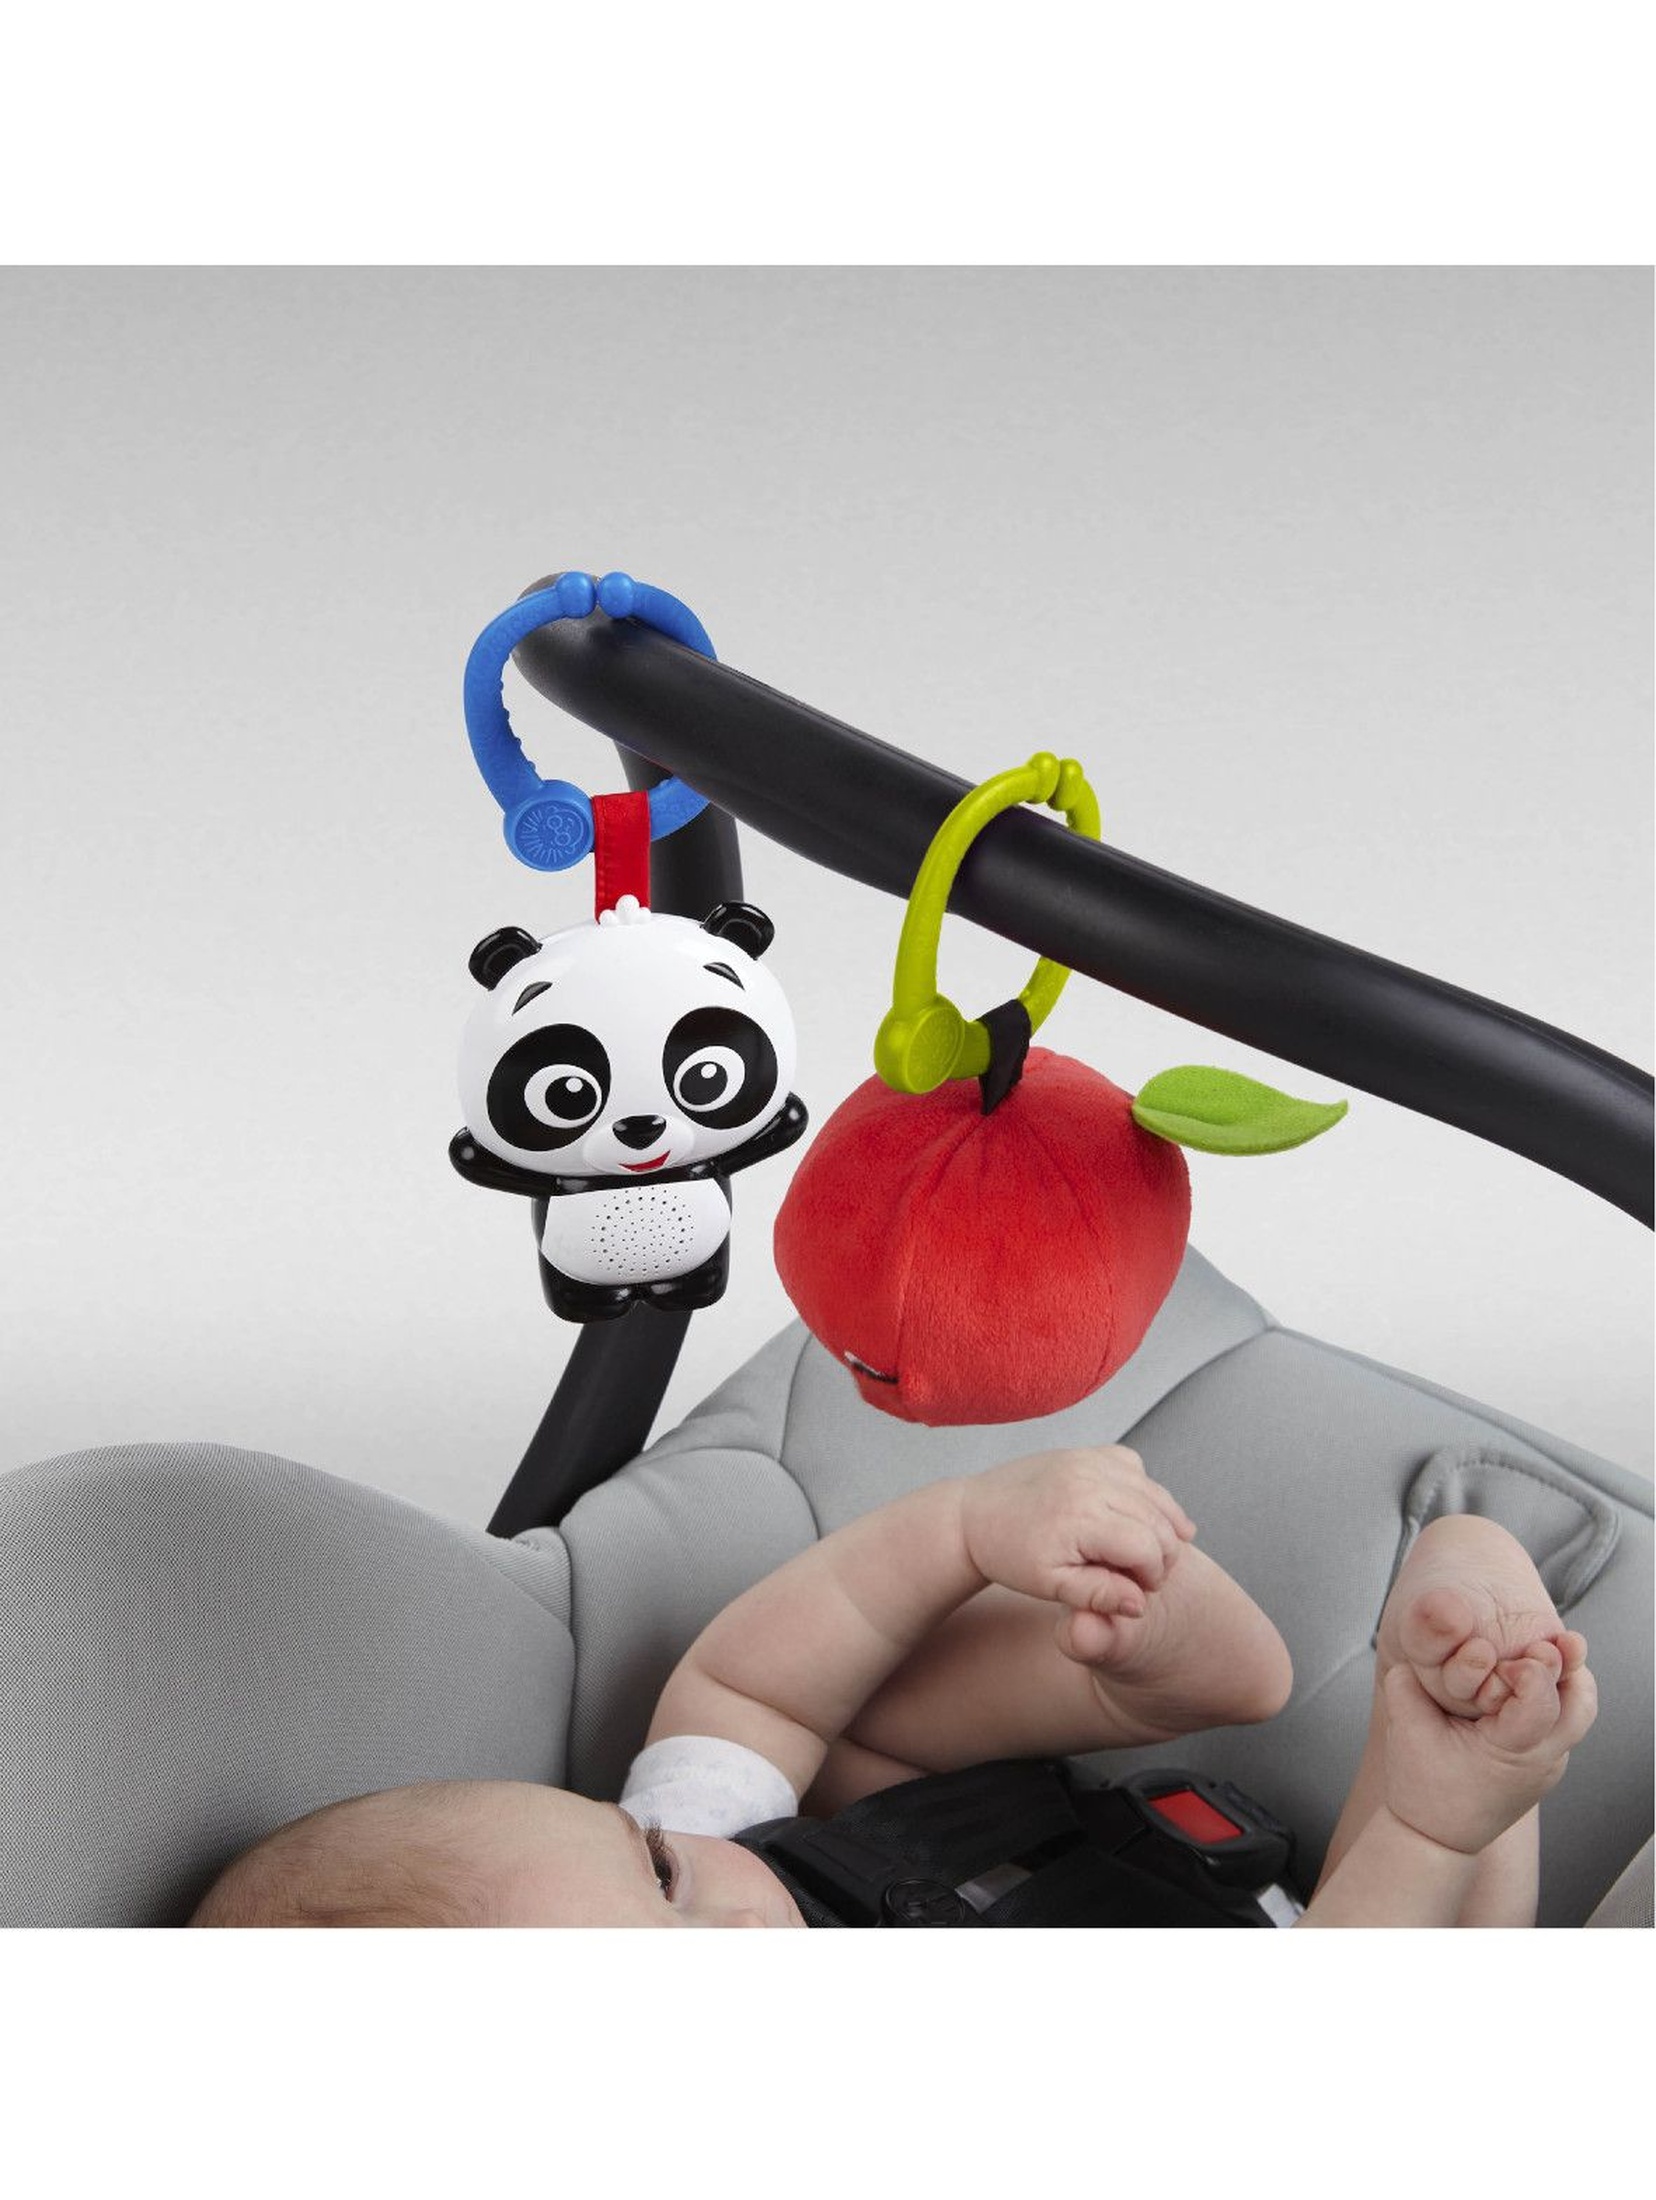 Mata sensory dla dziecka Panda